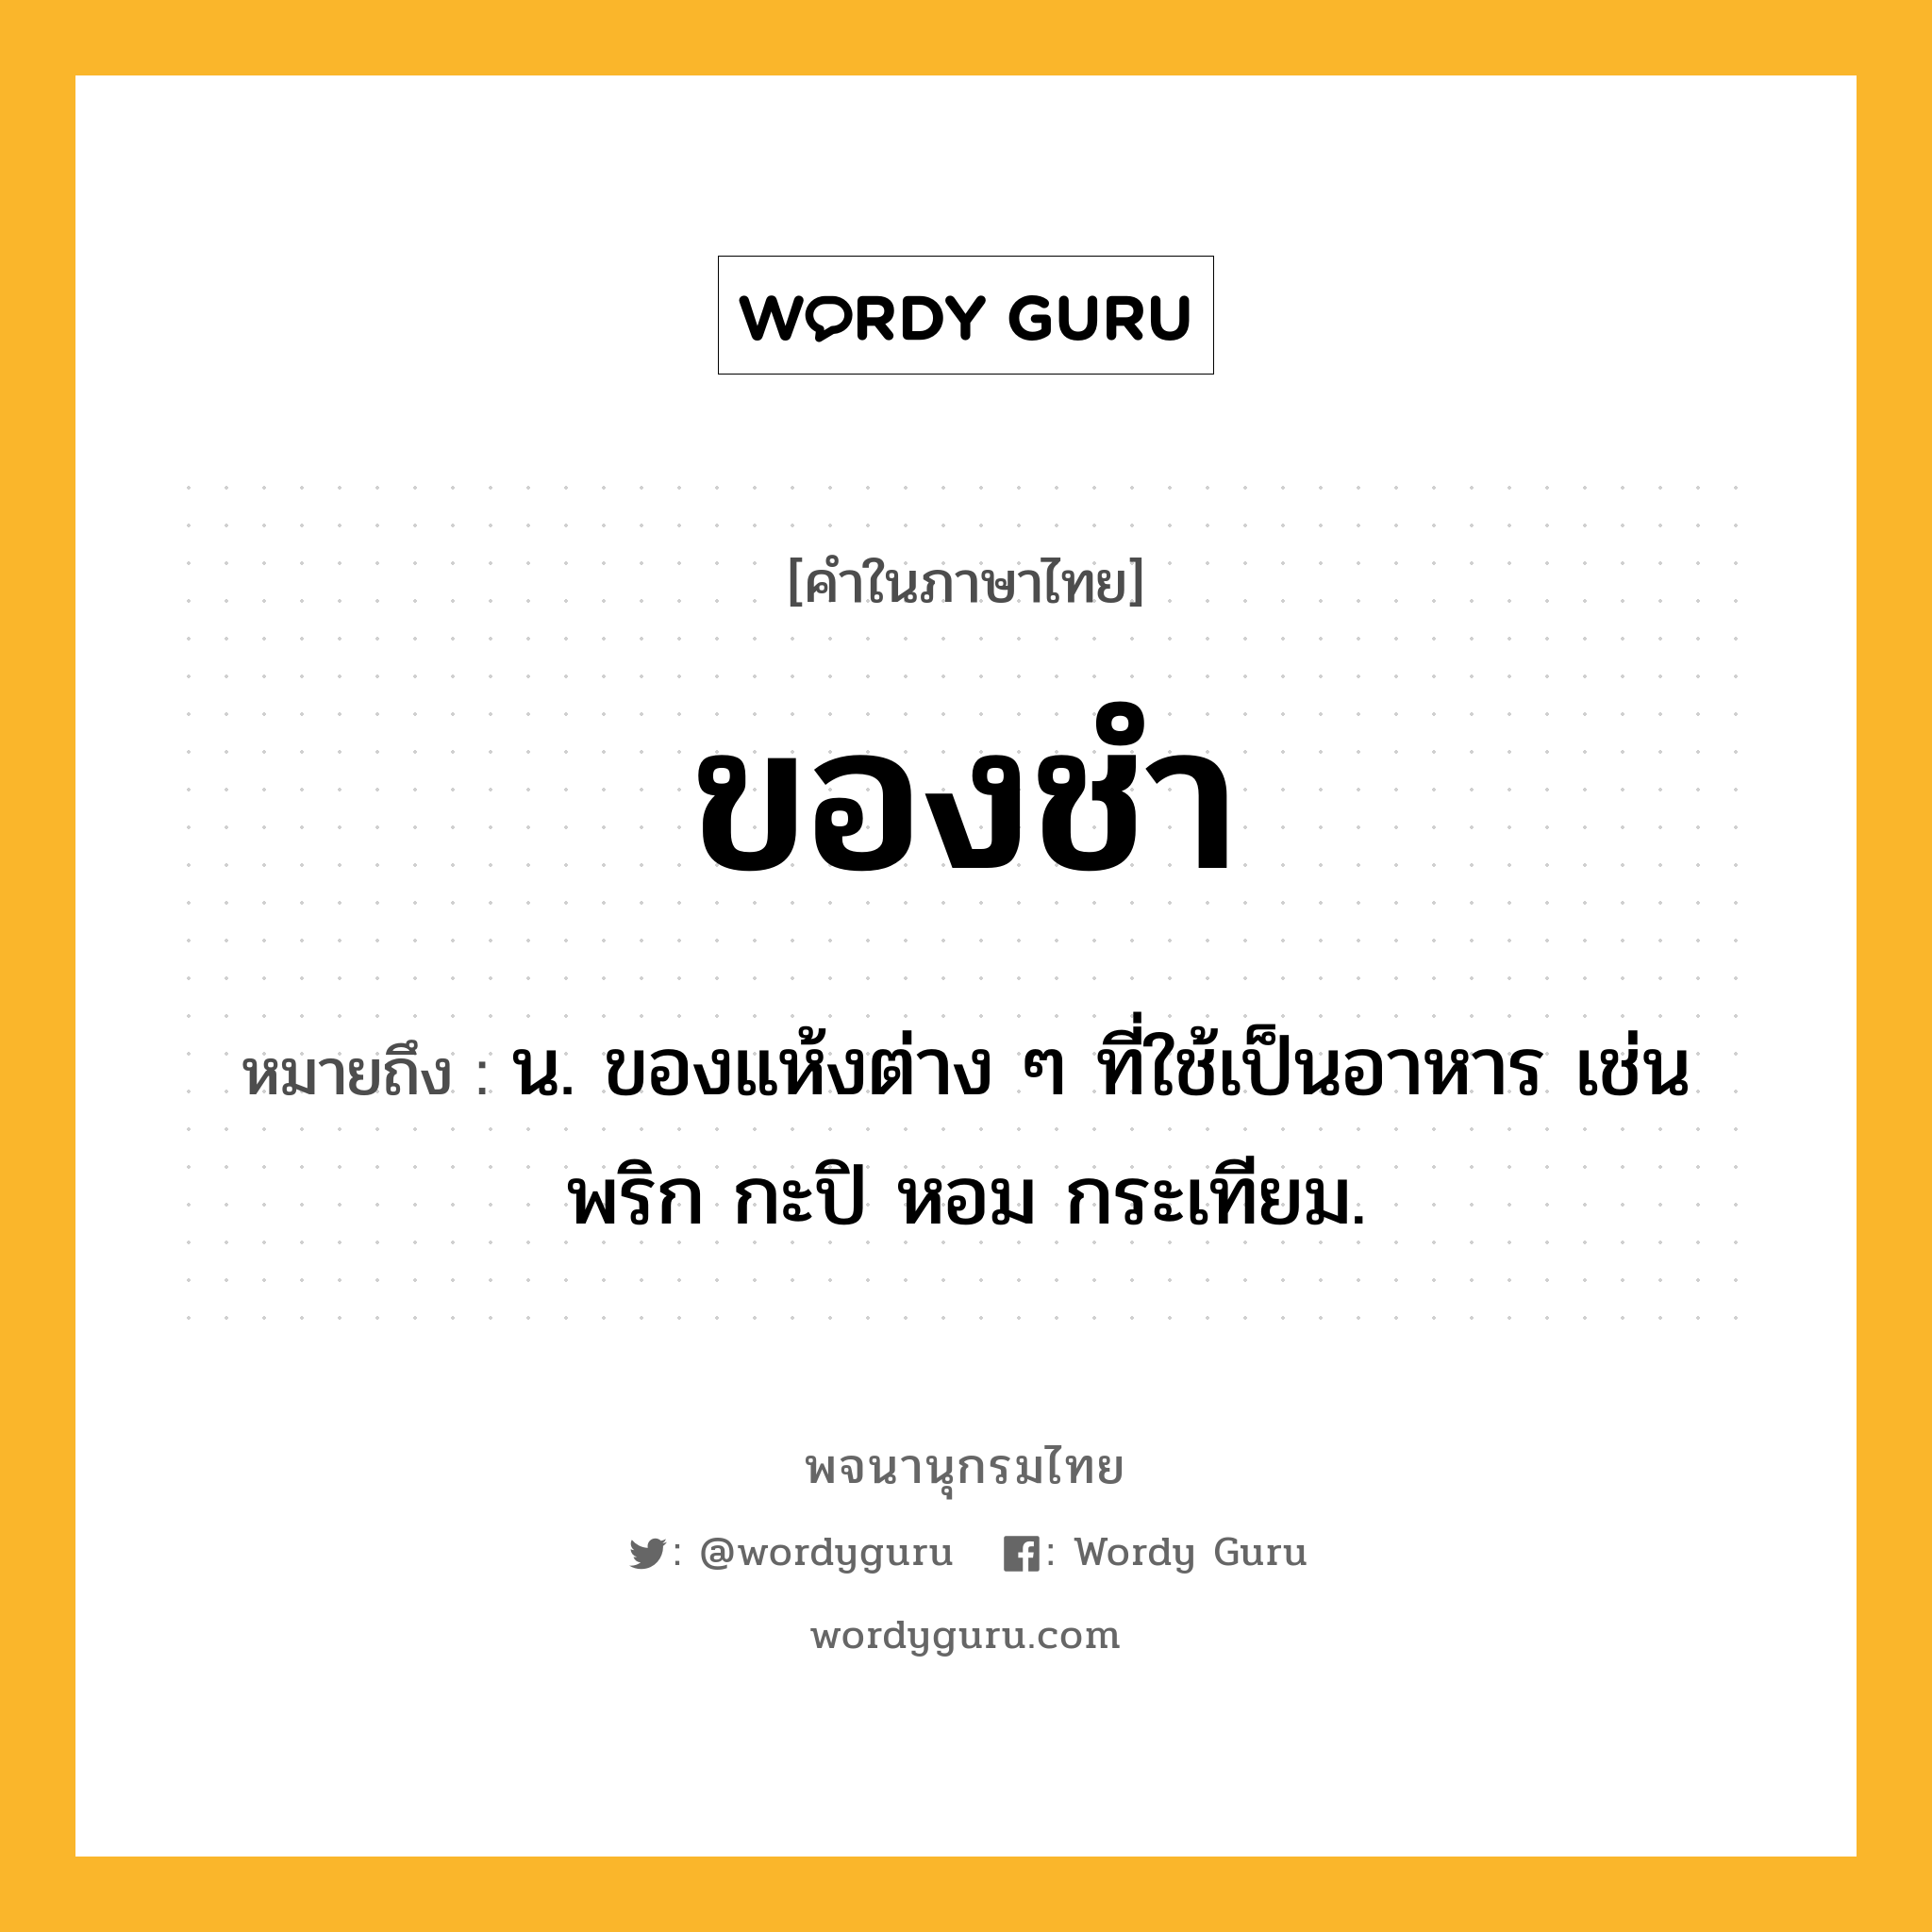 ของชำ หมายถึงอะไร?, คำในภาษาไทย ของชำ หมายถึง น. ของแห้งต่าง ๆ ที่ใช้เป็นอาหาร เช่น พริก กะปิ หอม กระเทียม.